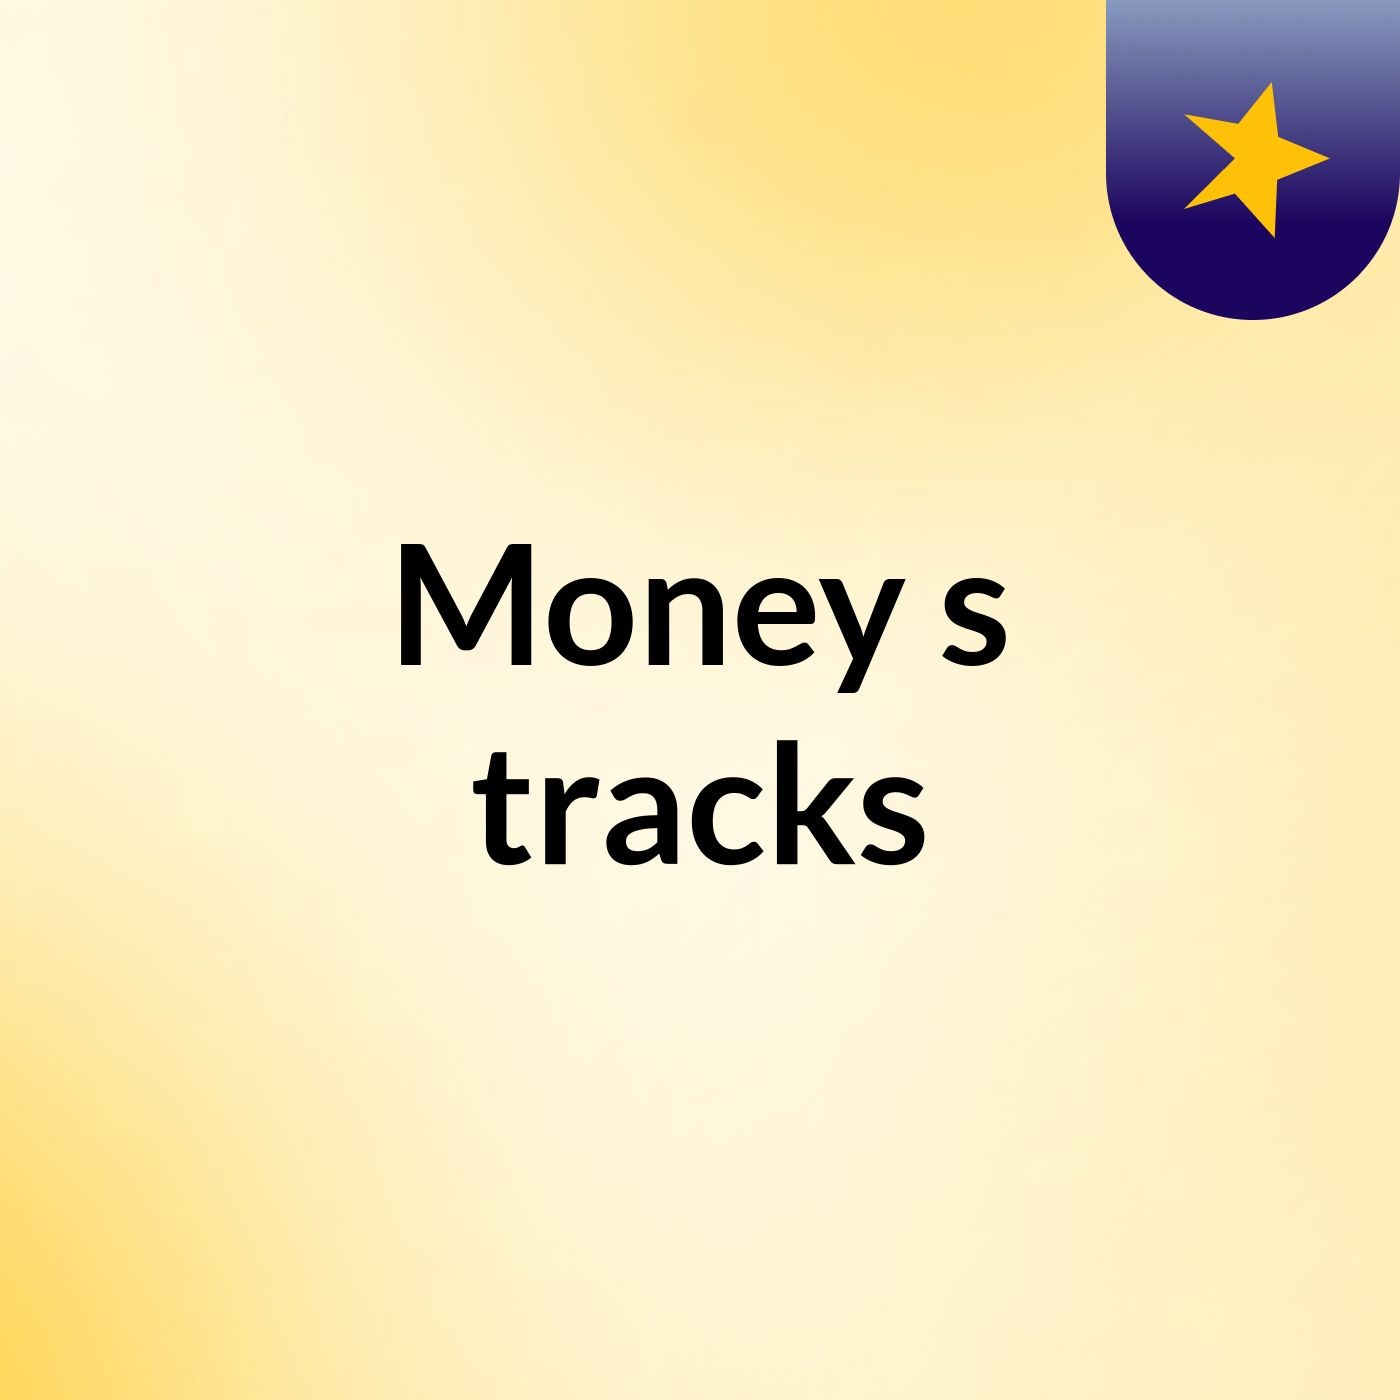 Money's tracks